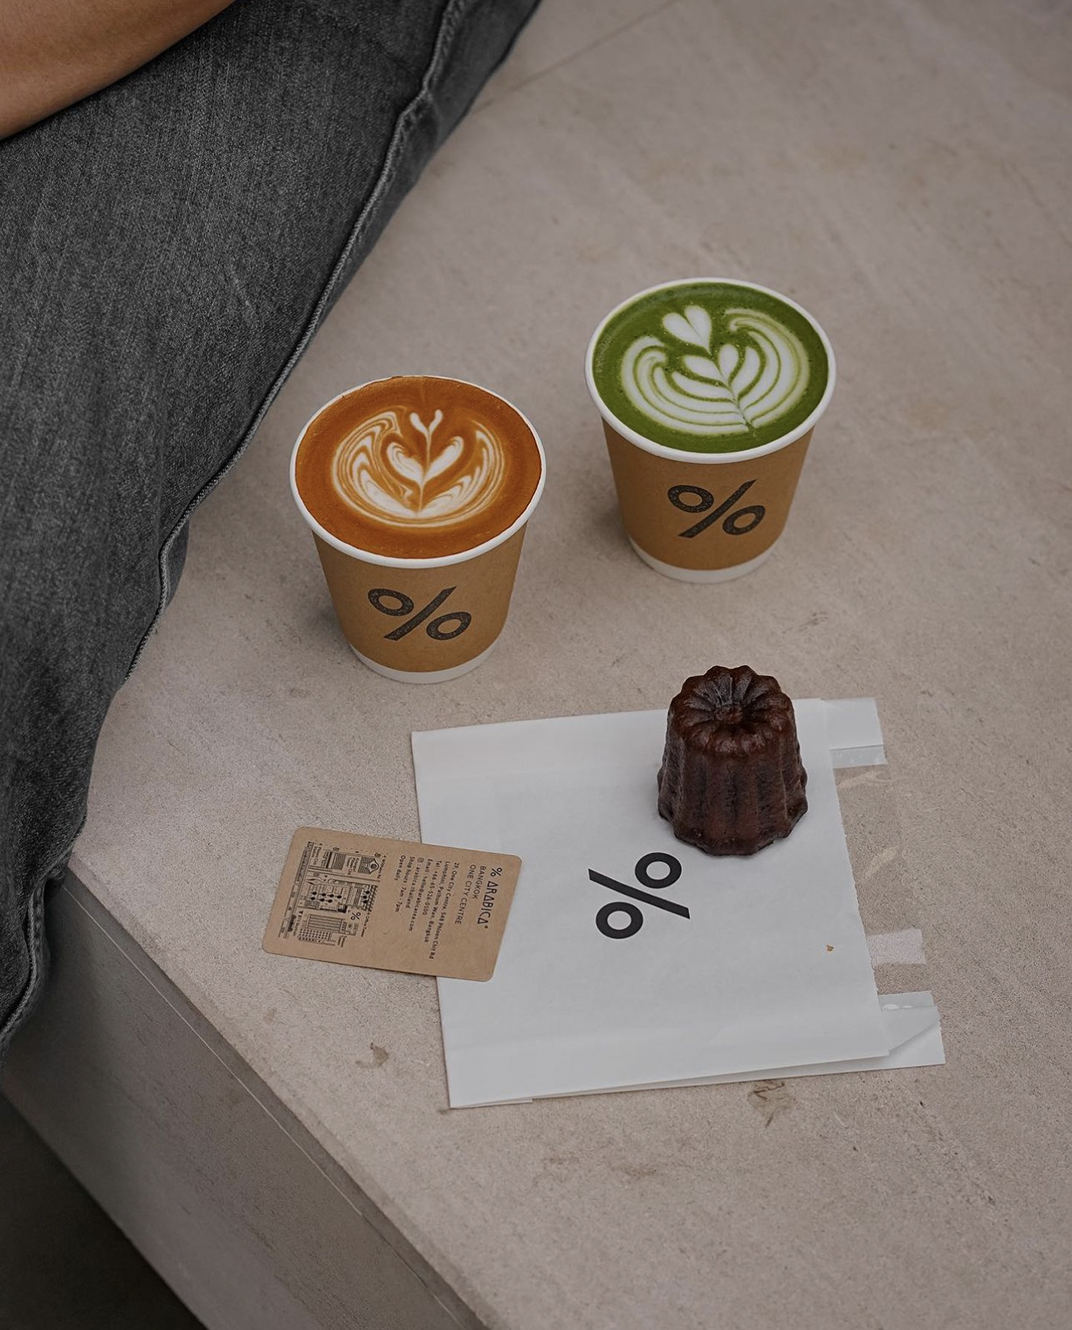 极简主义咖啡店%Arabica 泰国 上海 北京 上海 珠海 广州 武汉 杭州 佛山 香港 澳门 logo设计 vi设计 空间设计